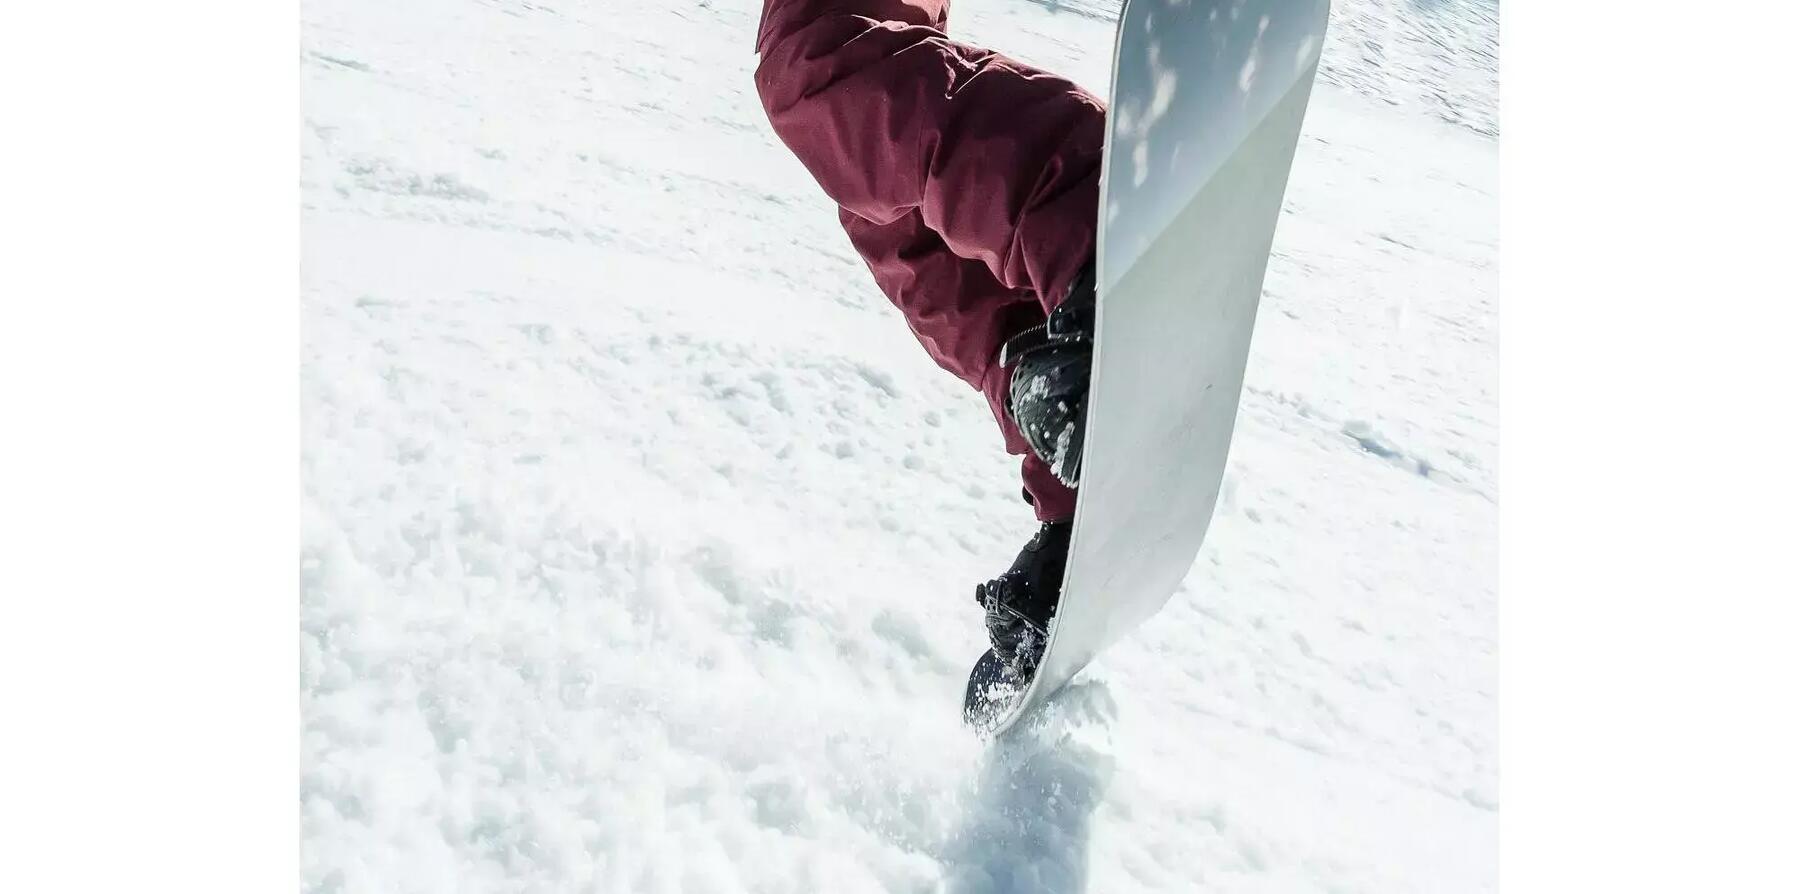 Hoe kies ik mijn snowboardschoenen?